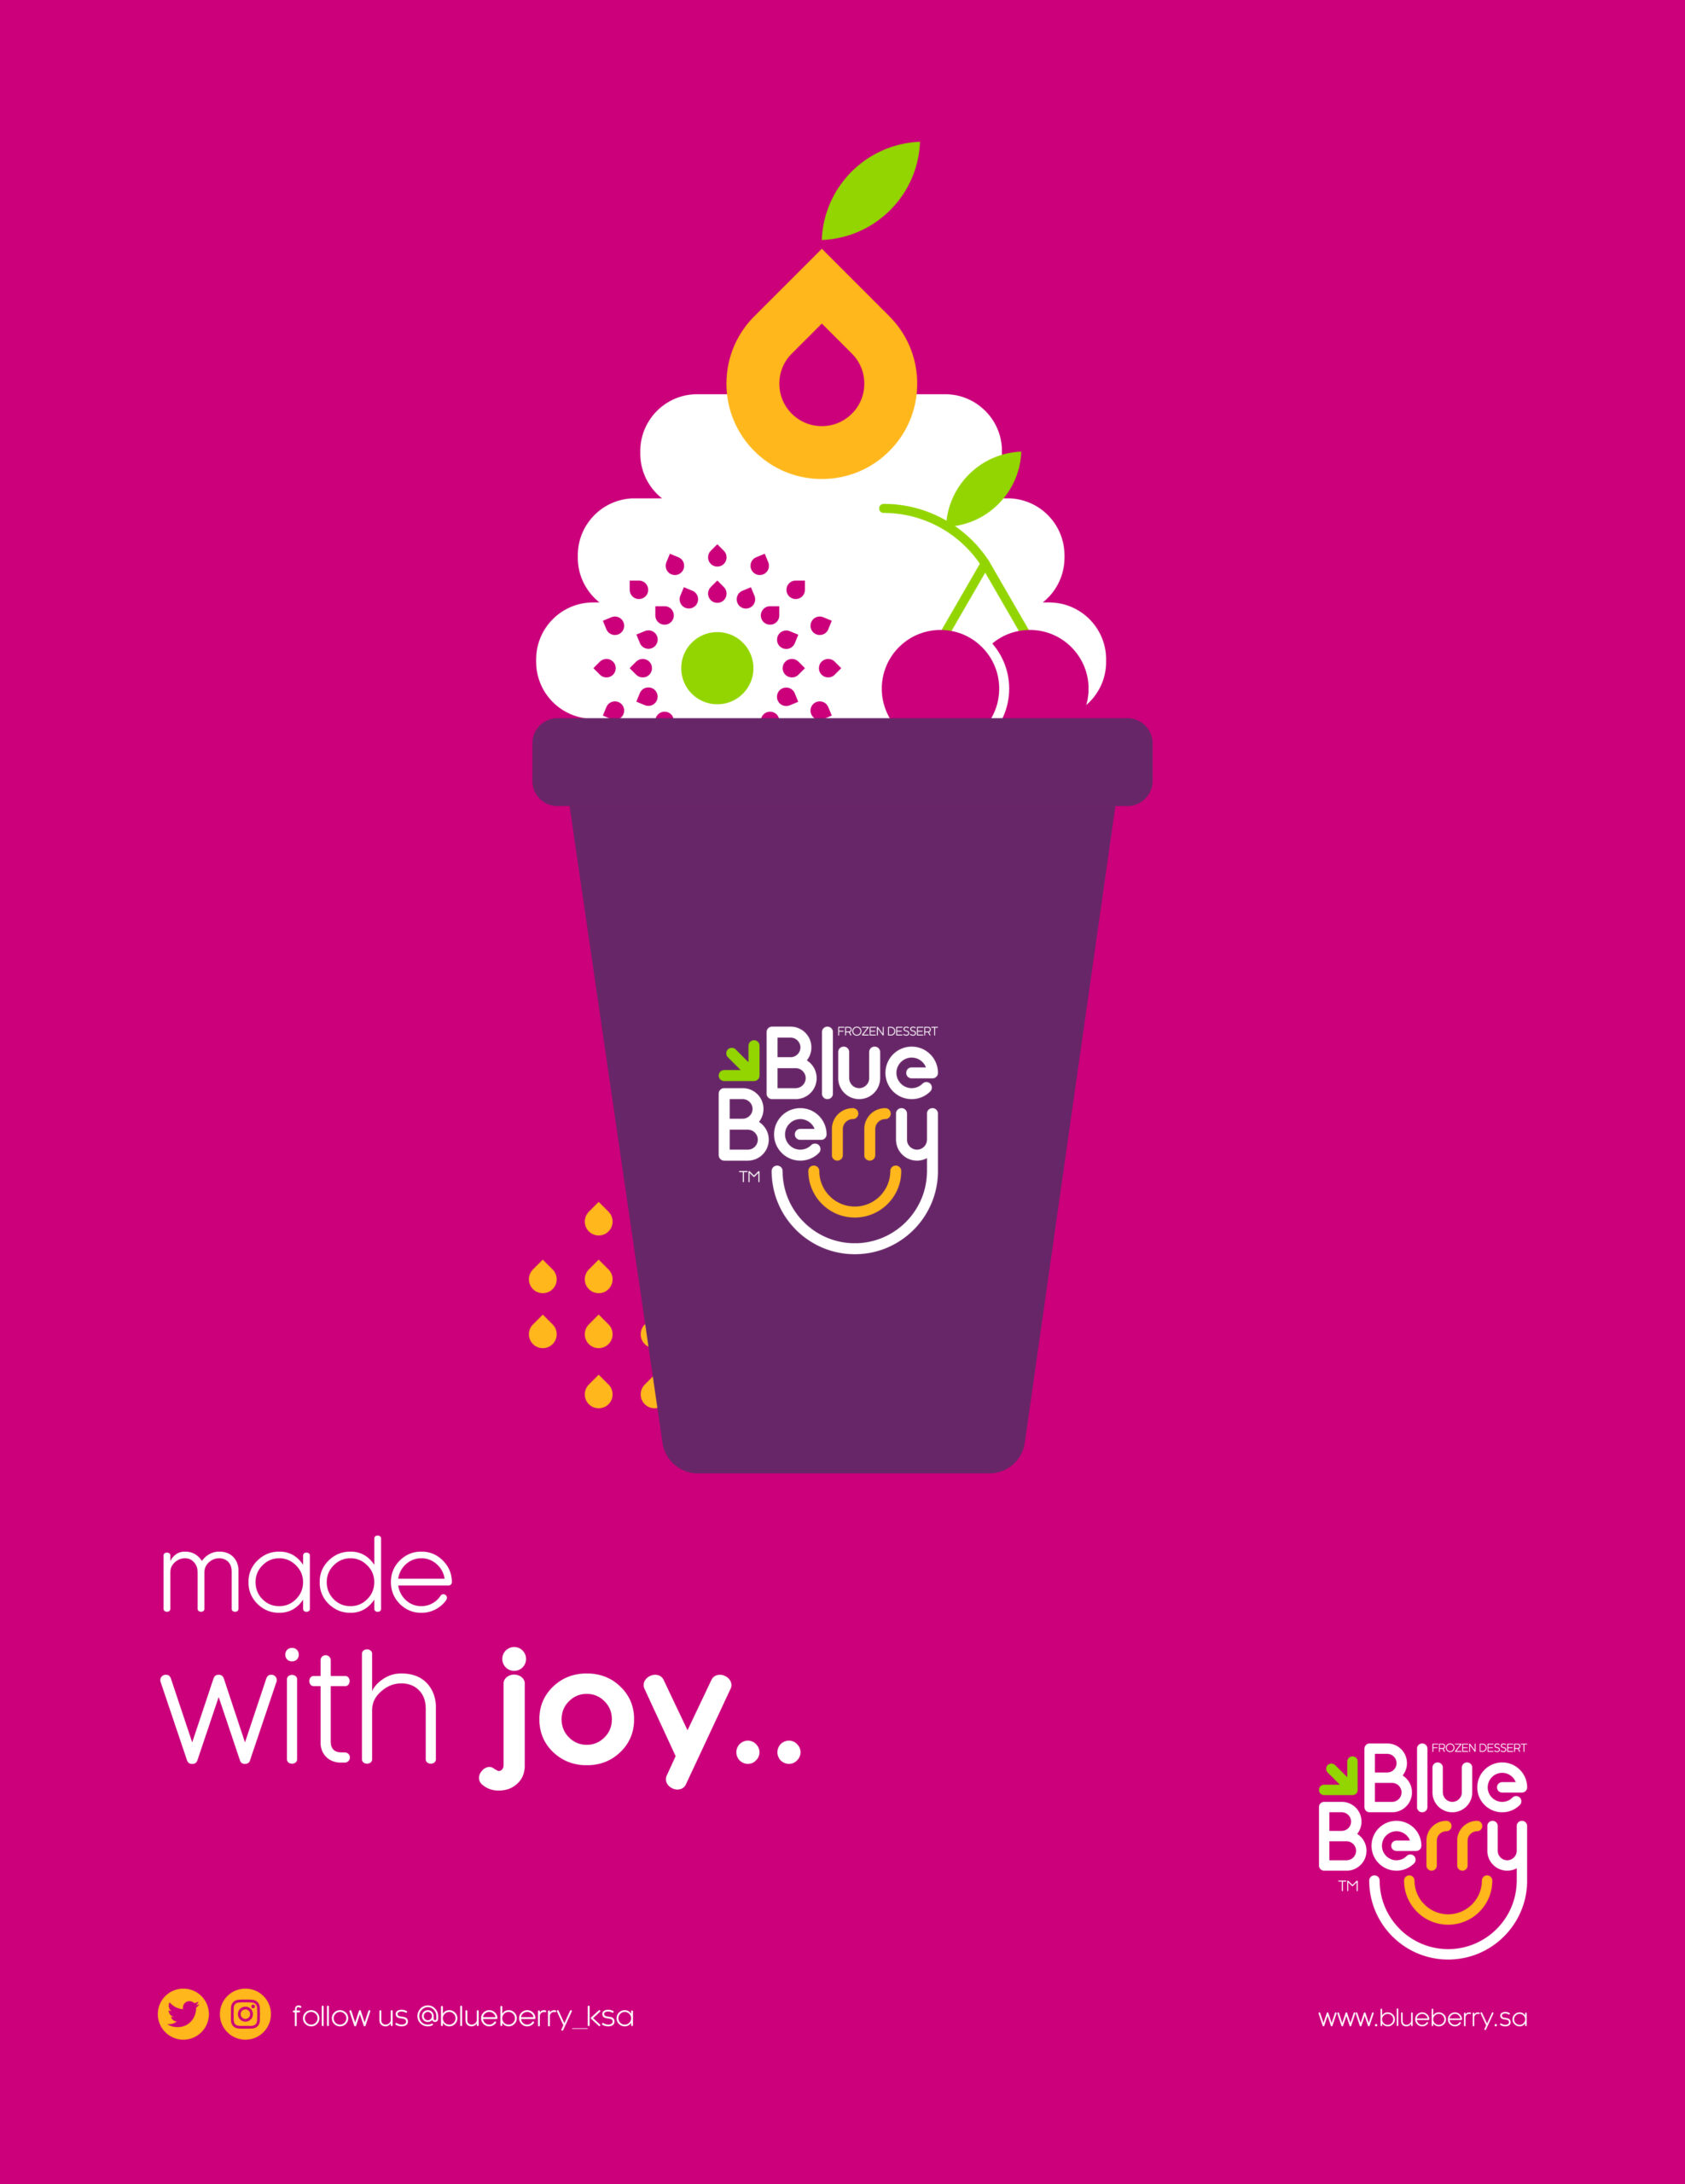 Blueberry-Frozen-Dessert-Branding-By-Millimeter-Creative-Agency-Cover-P03